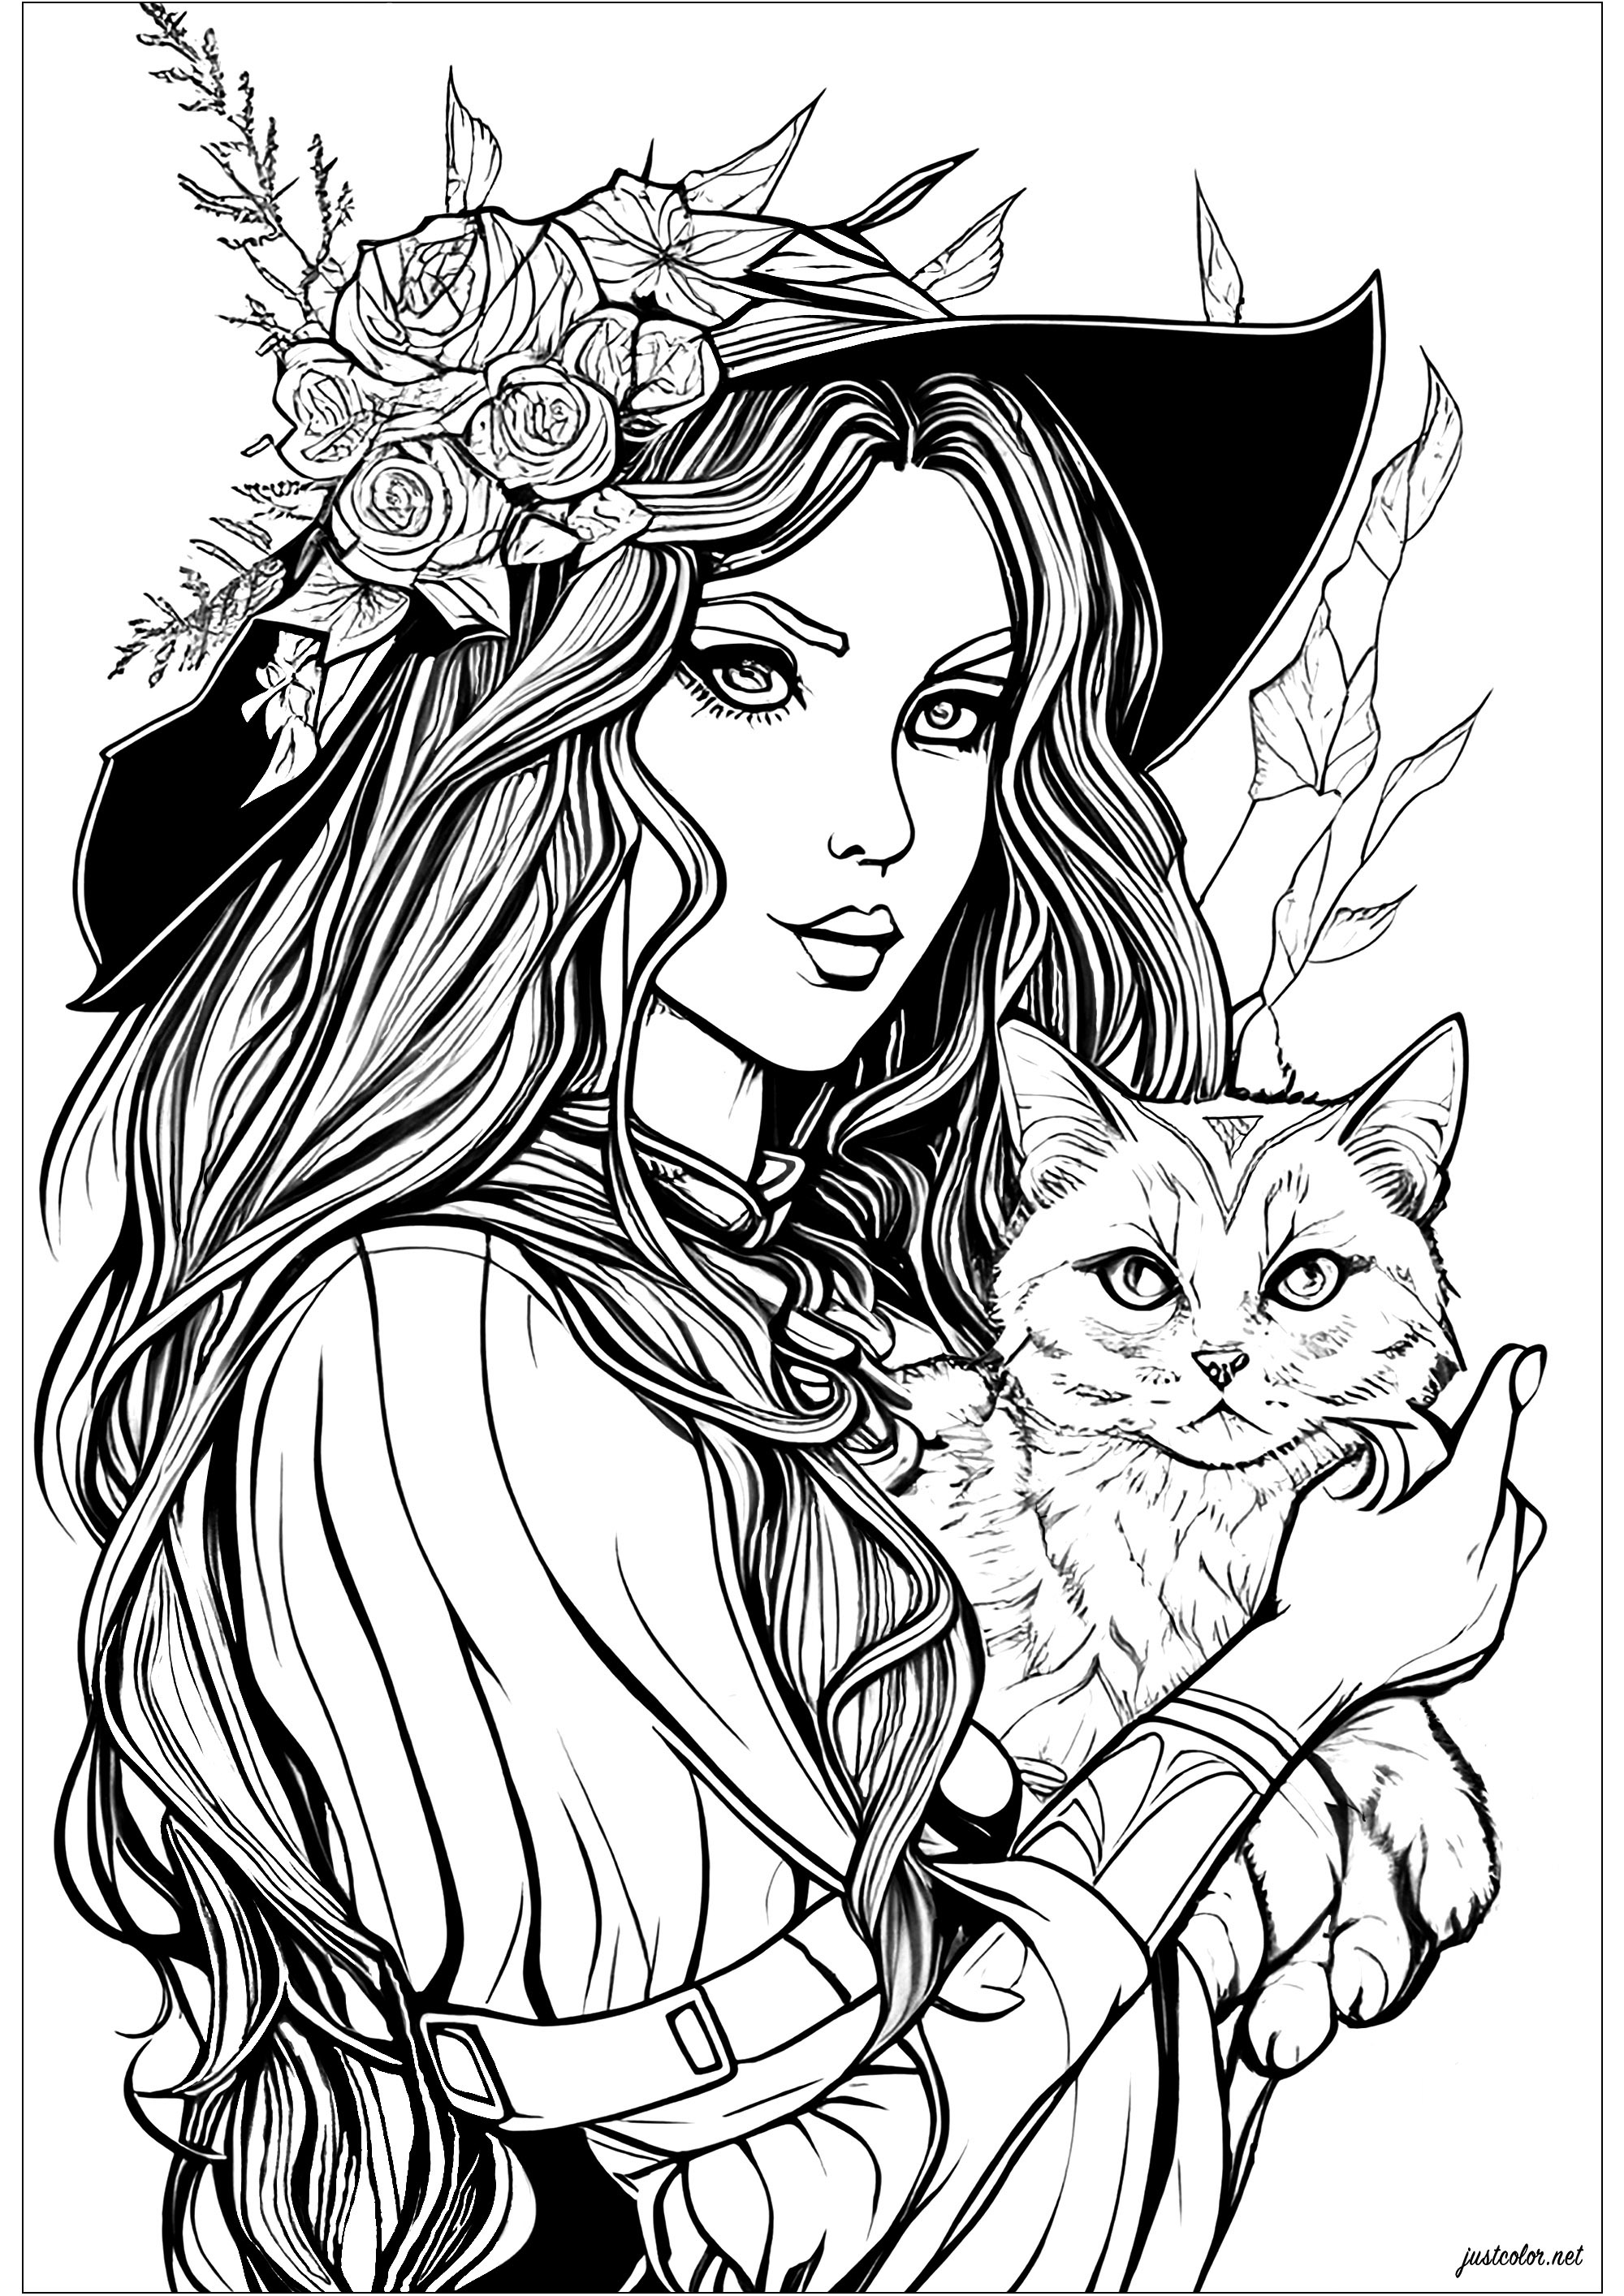 A bruxa encantadora e o seu gato - Dia das Bruxas - Coloring Pages